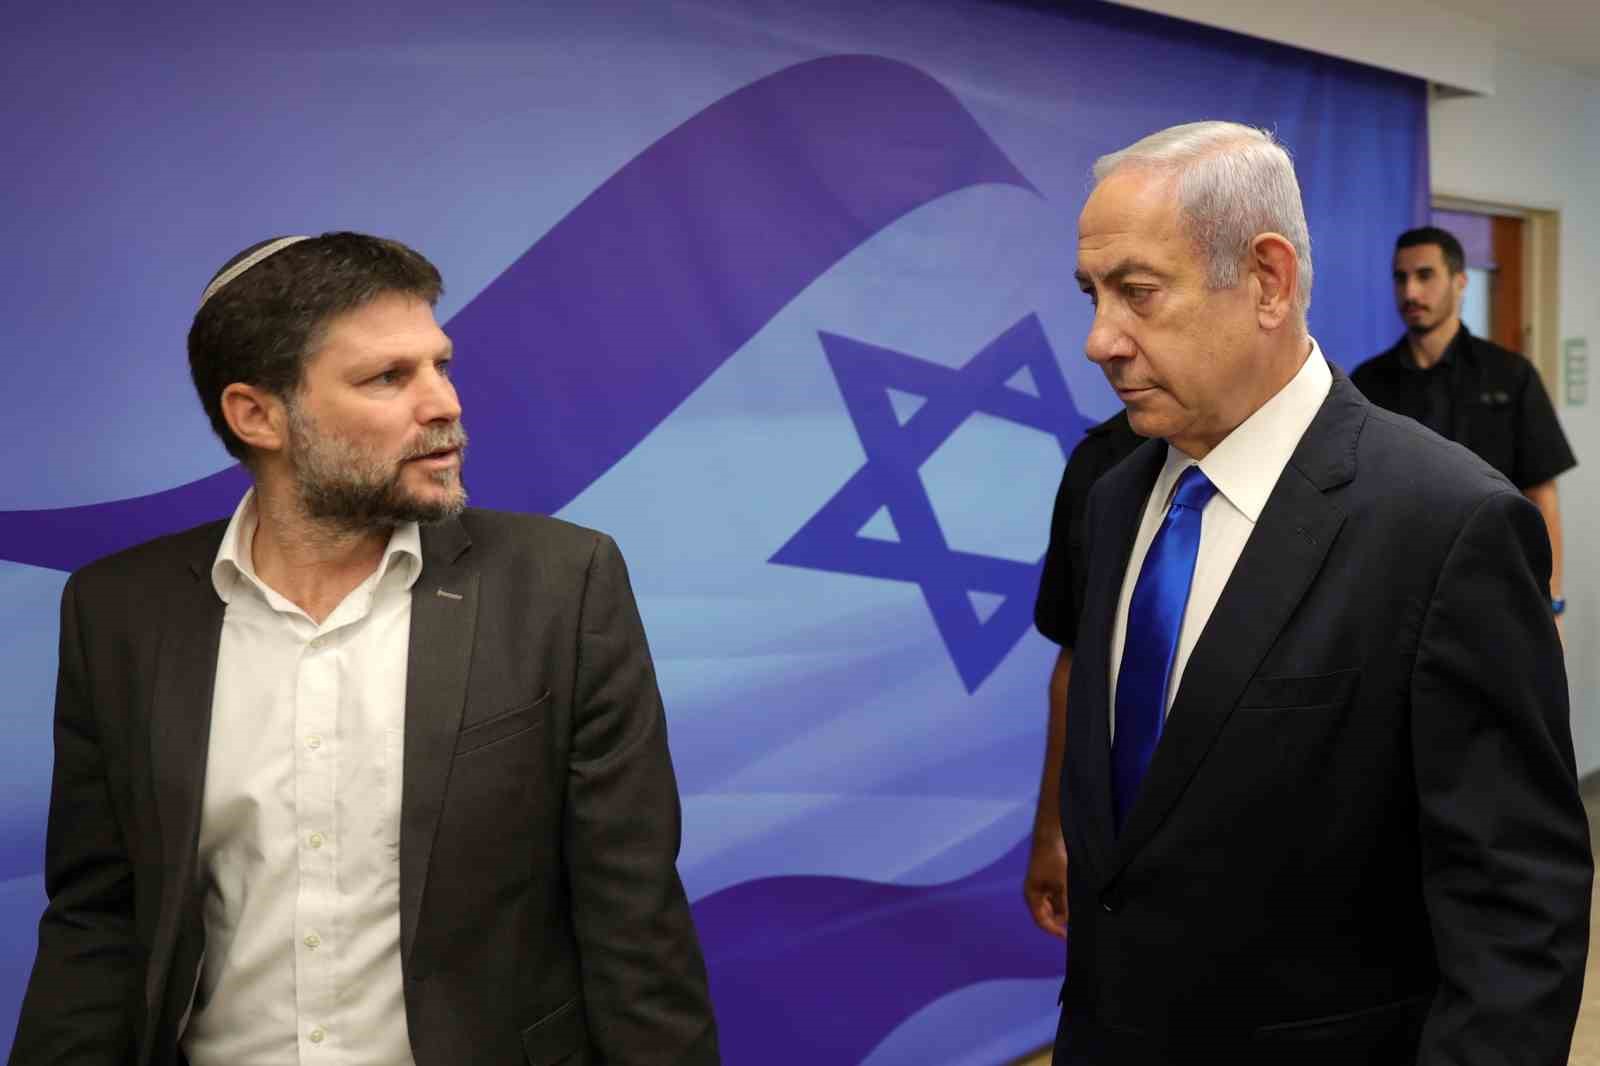 İsrailli bakandan Katar'a gidecek İsraillilere yasak konulsun talebi